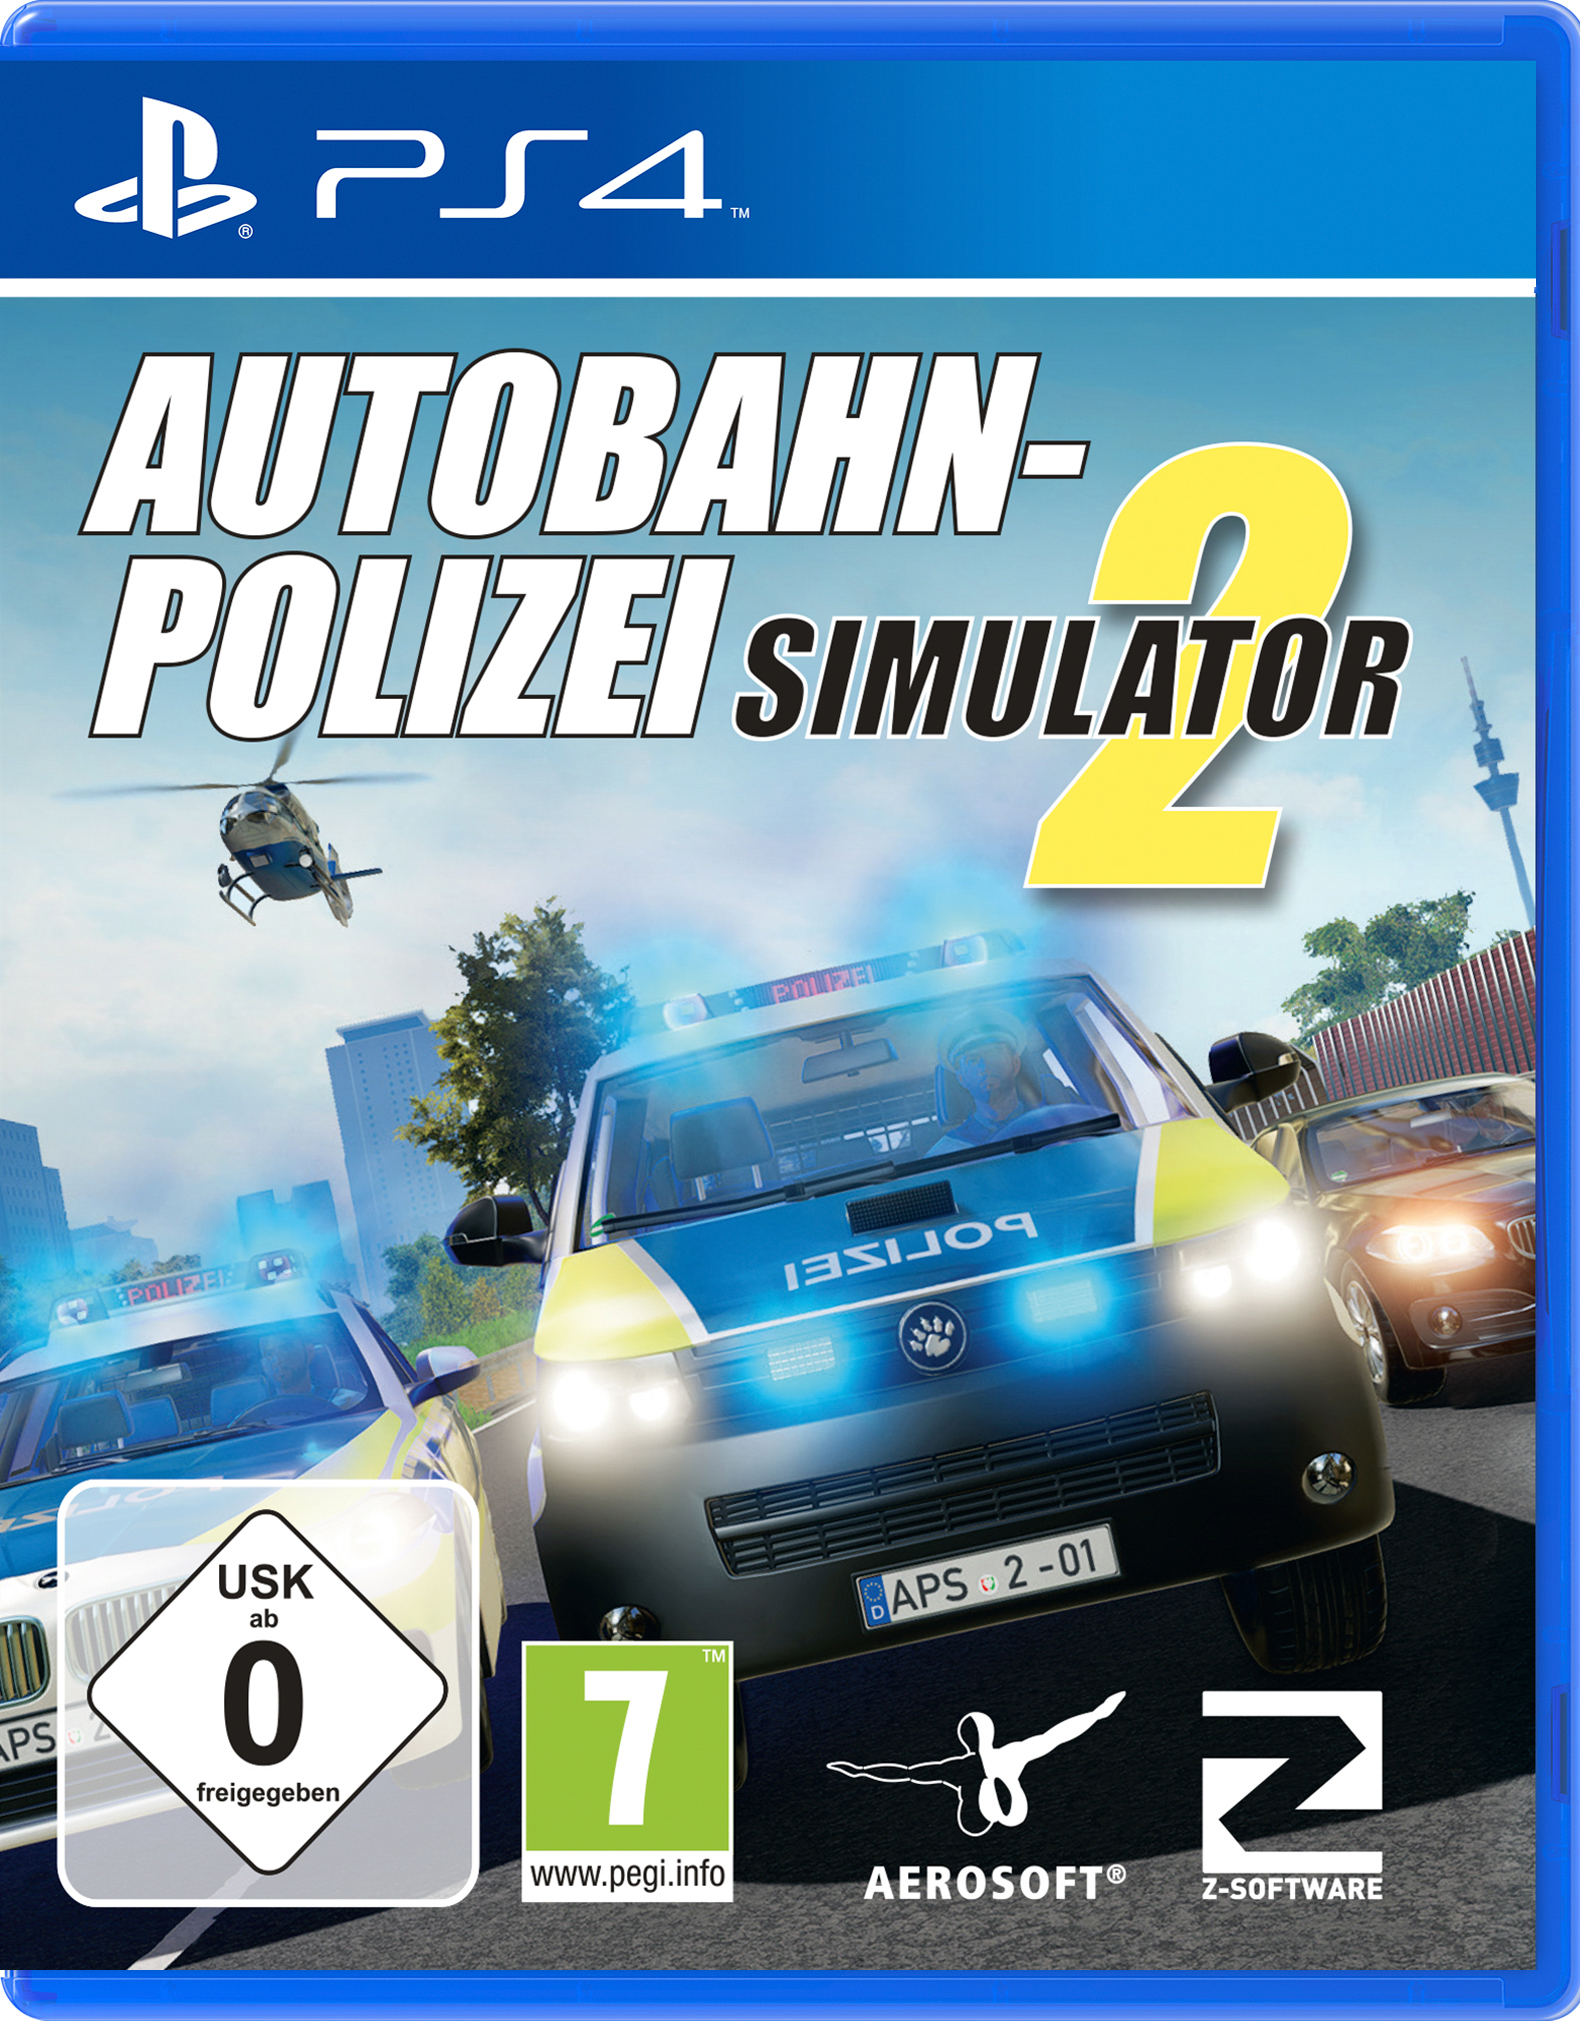 Autobahn-Polizei Simulator 2